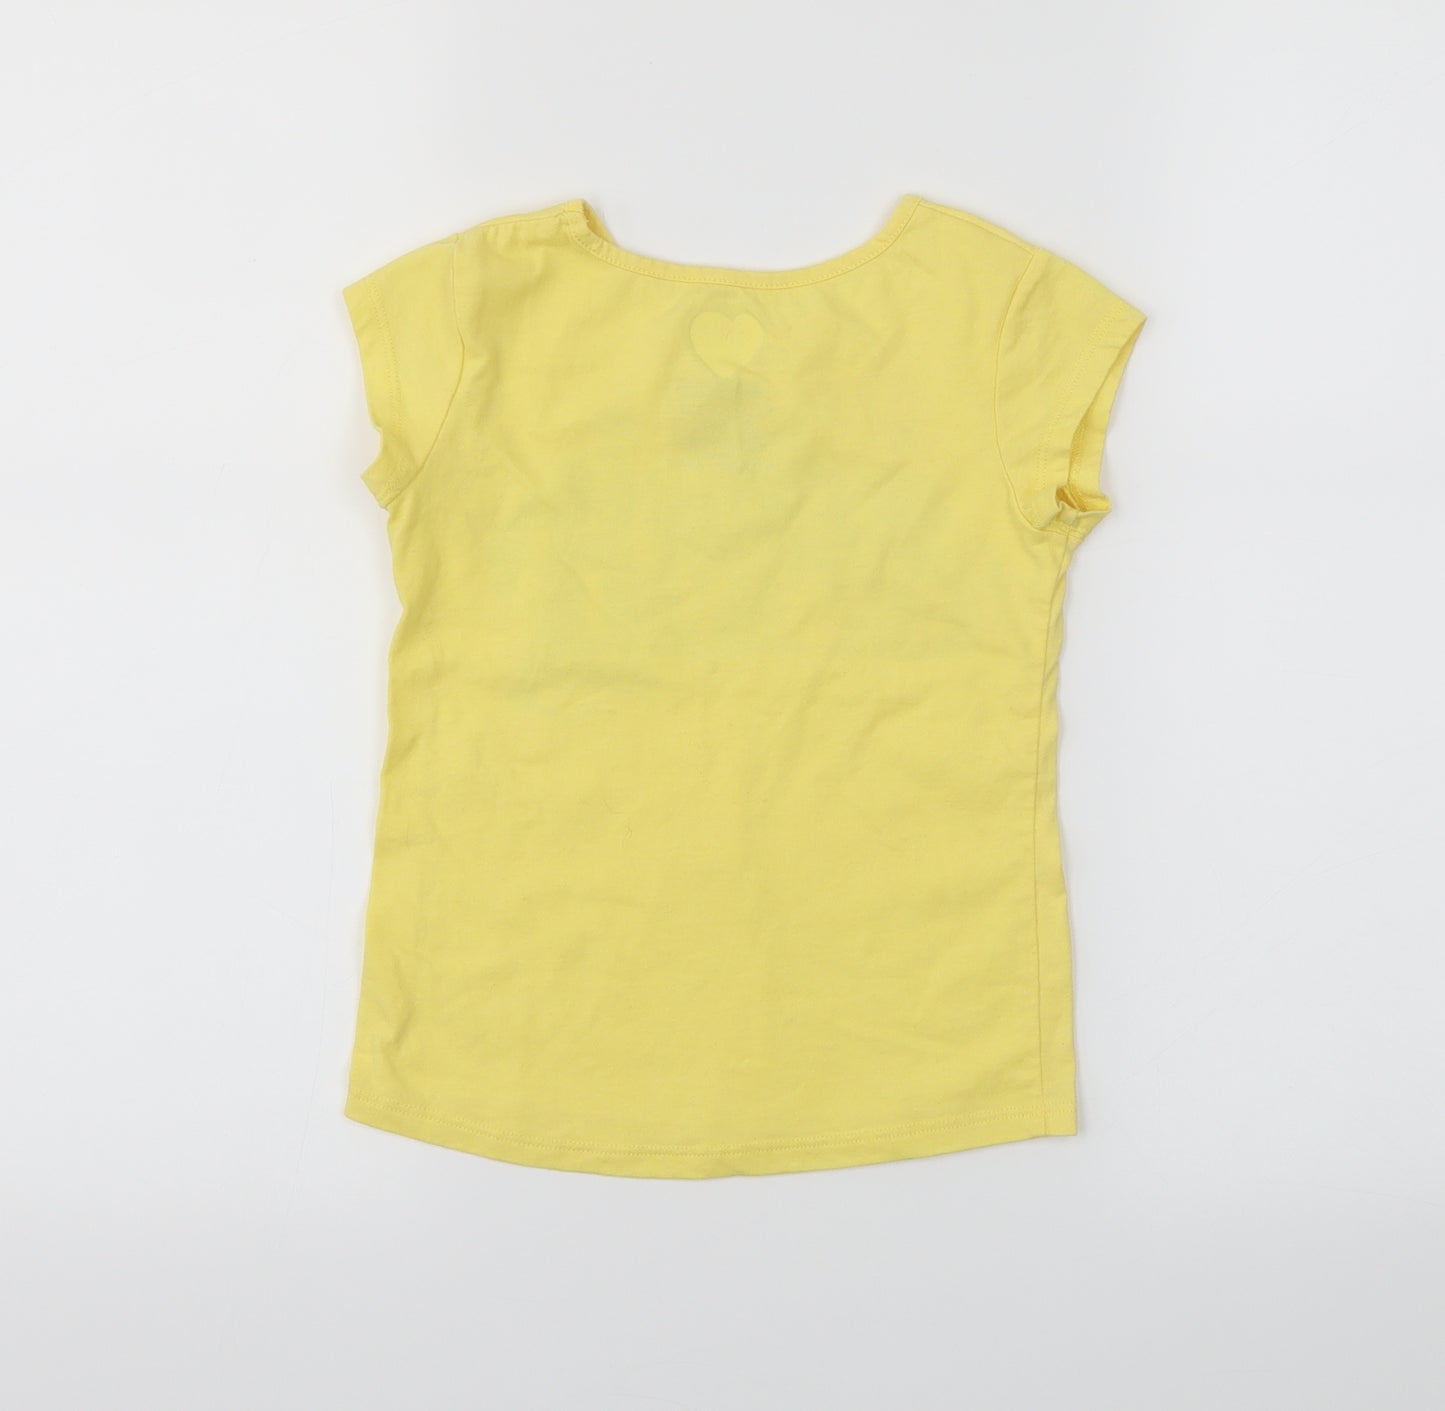 Garanimals Girls Yellow   Basic T-Shirt Size 6 Years